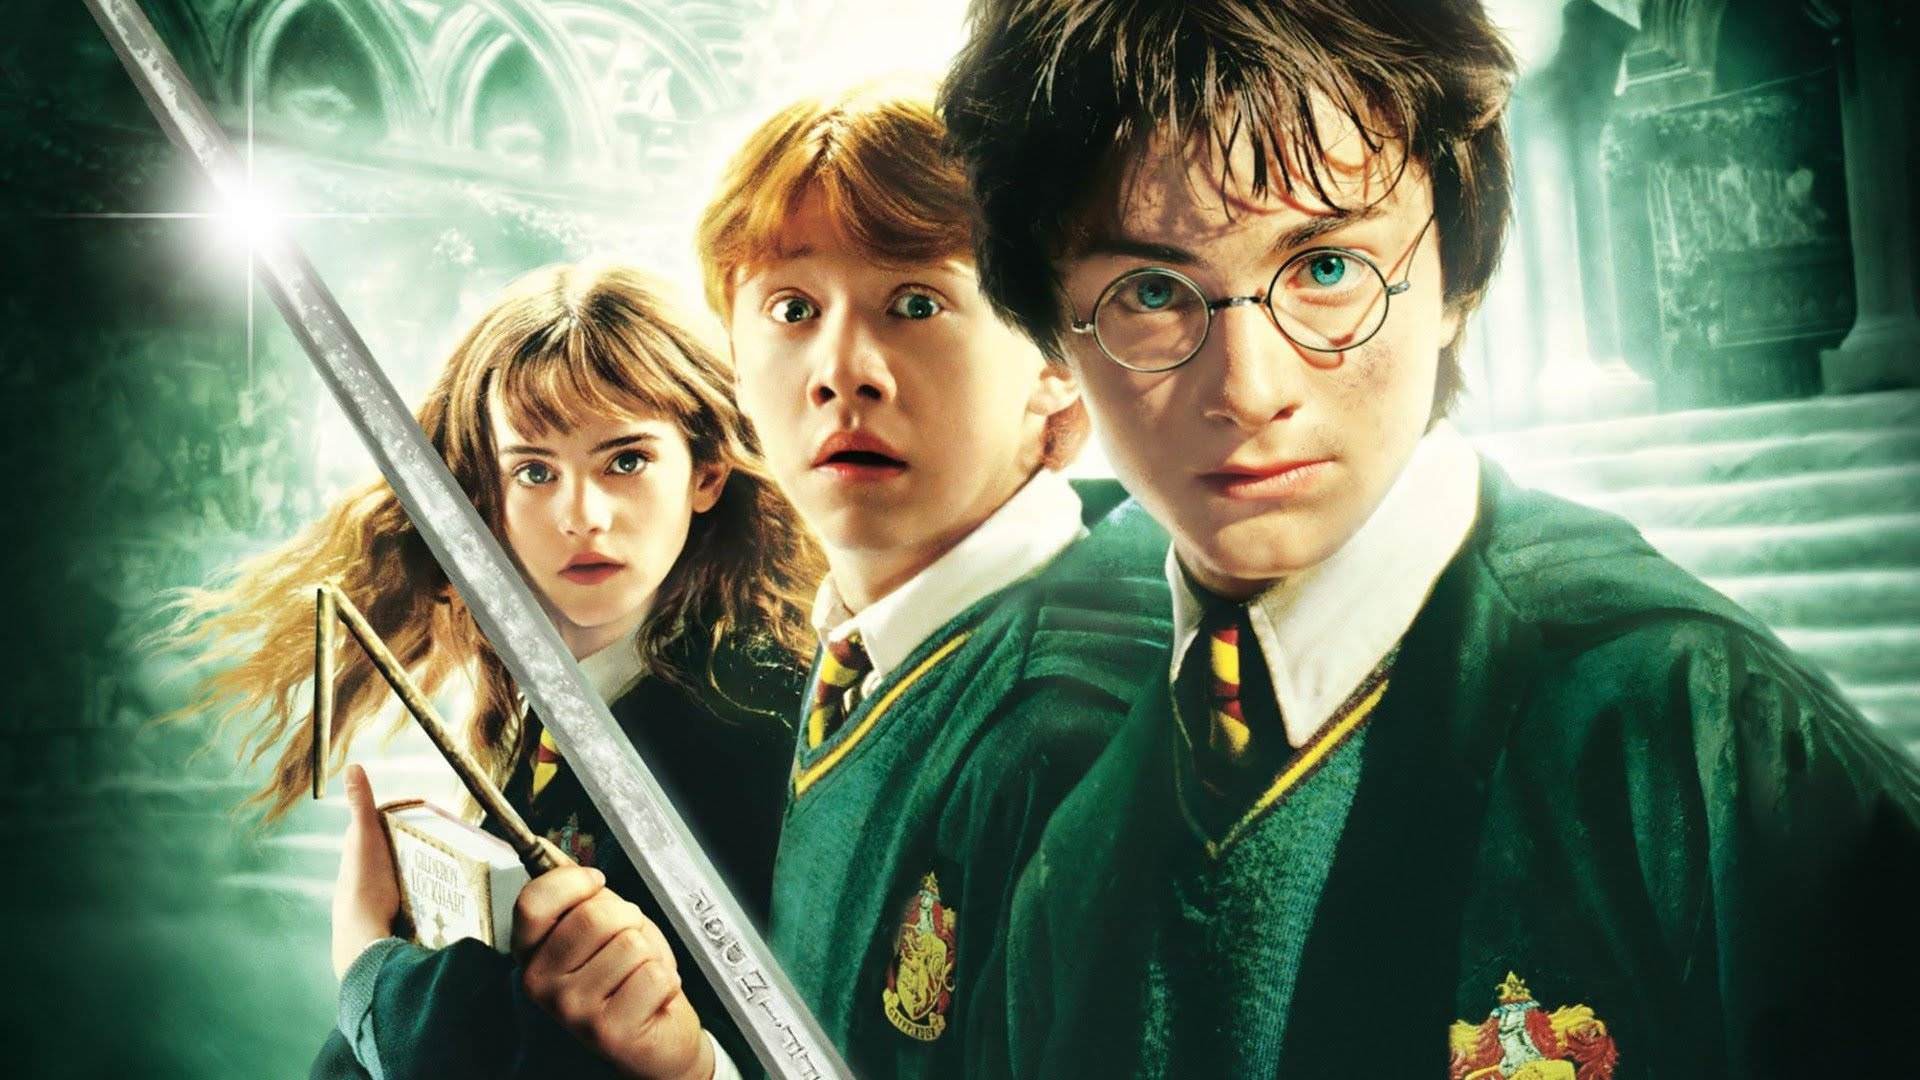 Cách học tiếng Anh cơ bản: thích mê với những lời thoại nhân văn trong phim Harry Potter